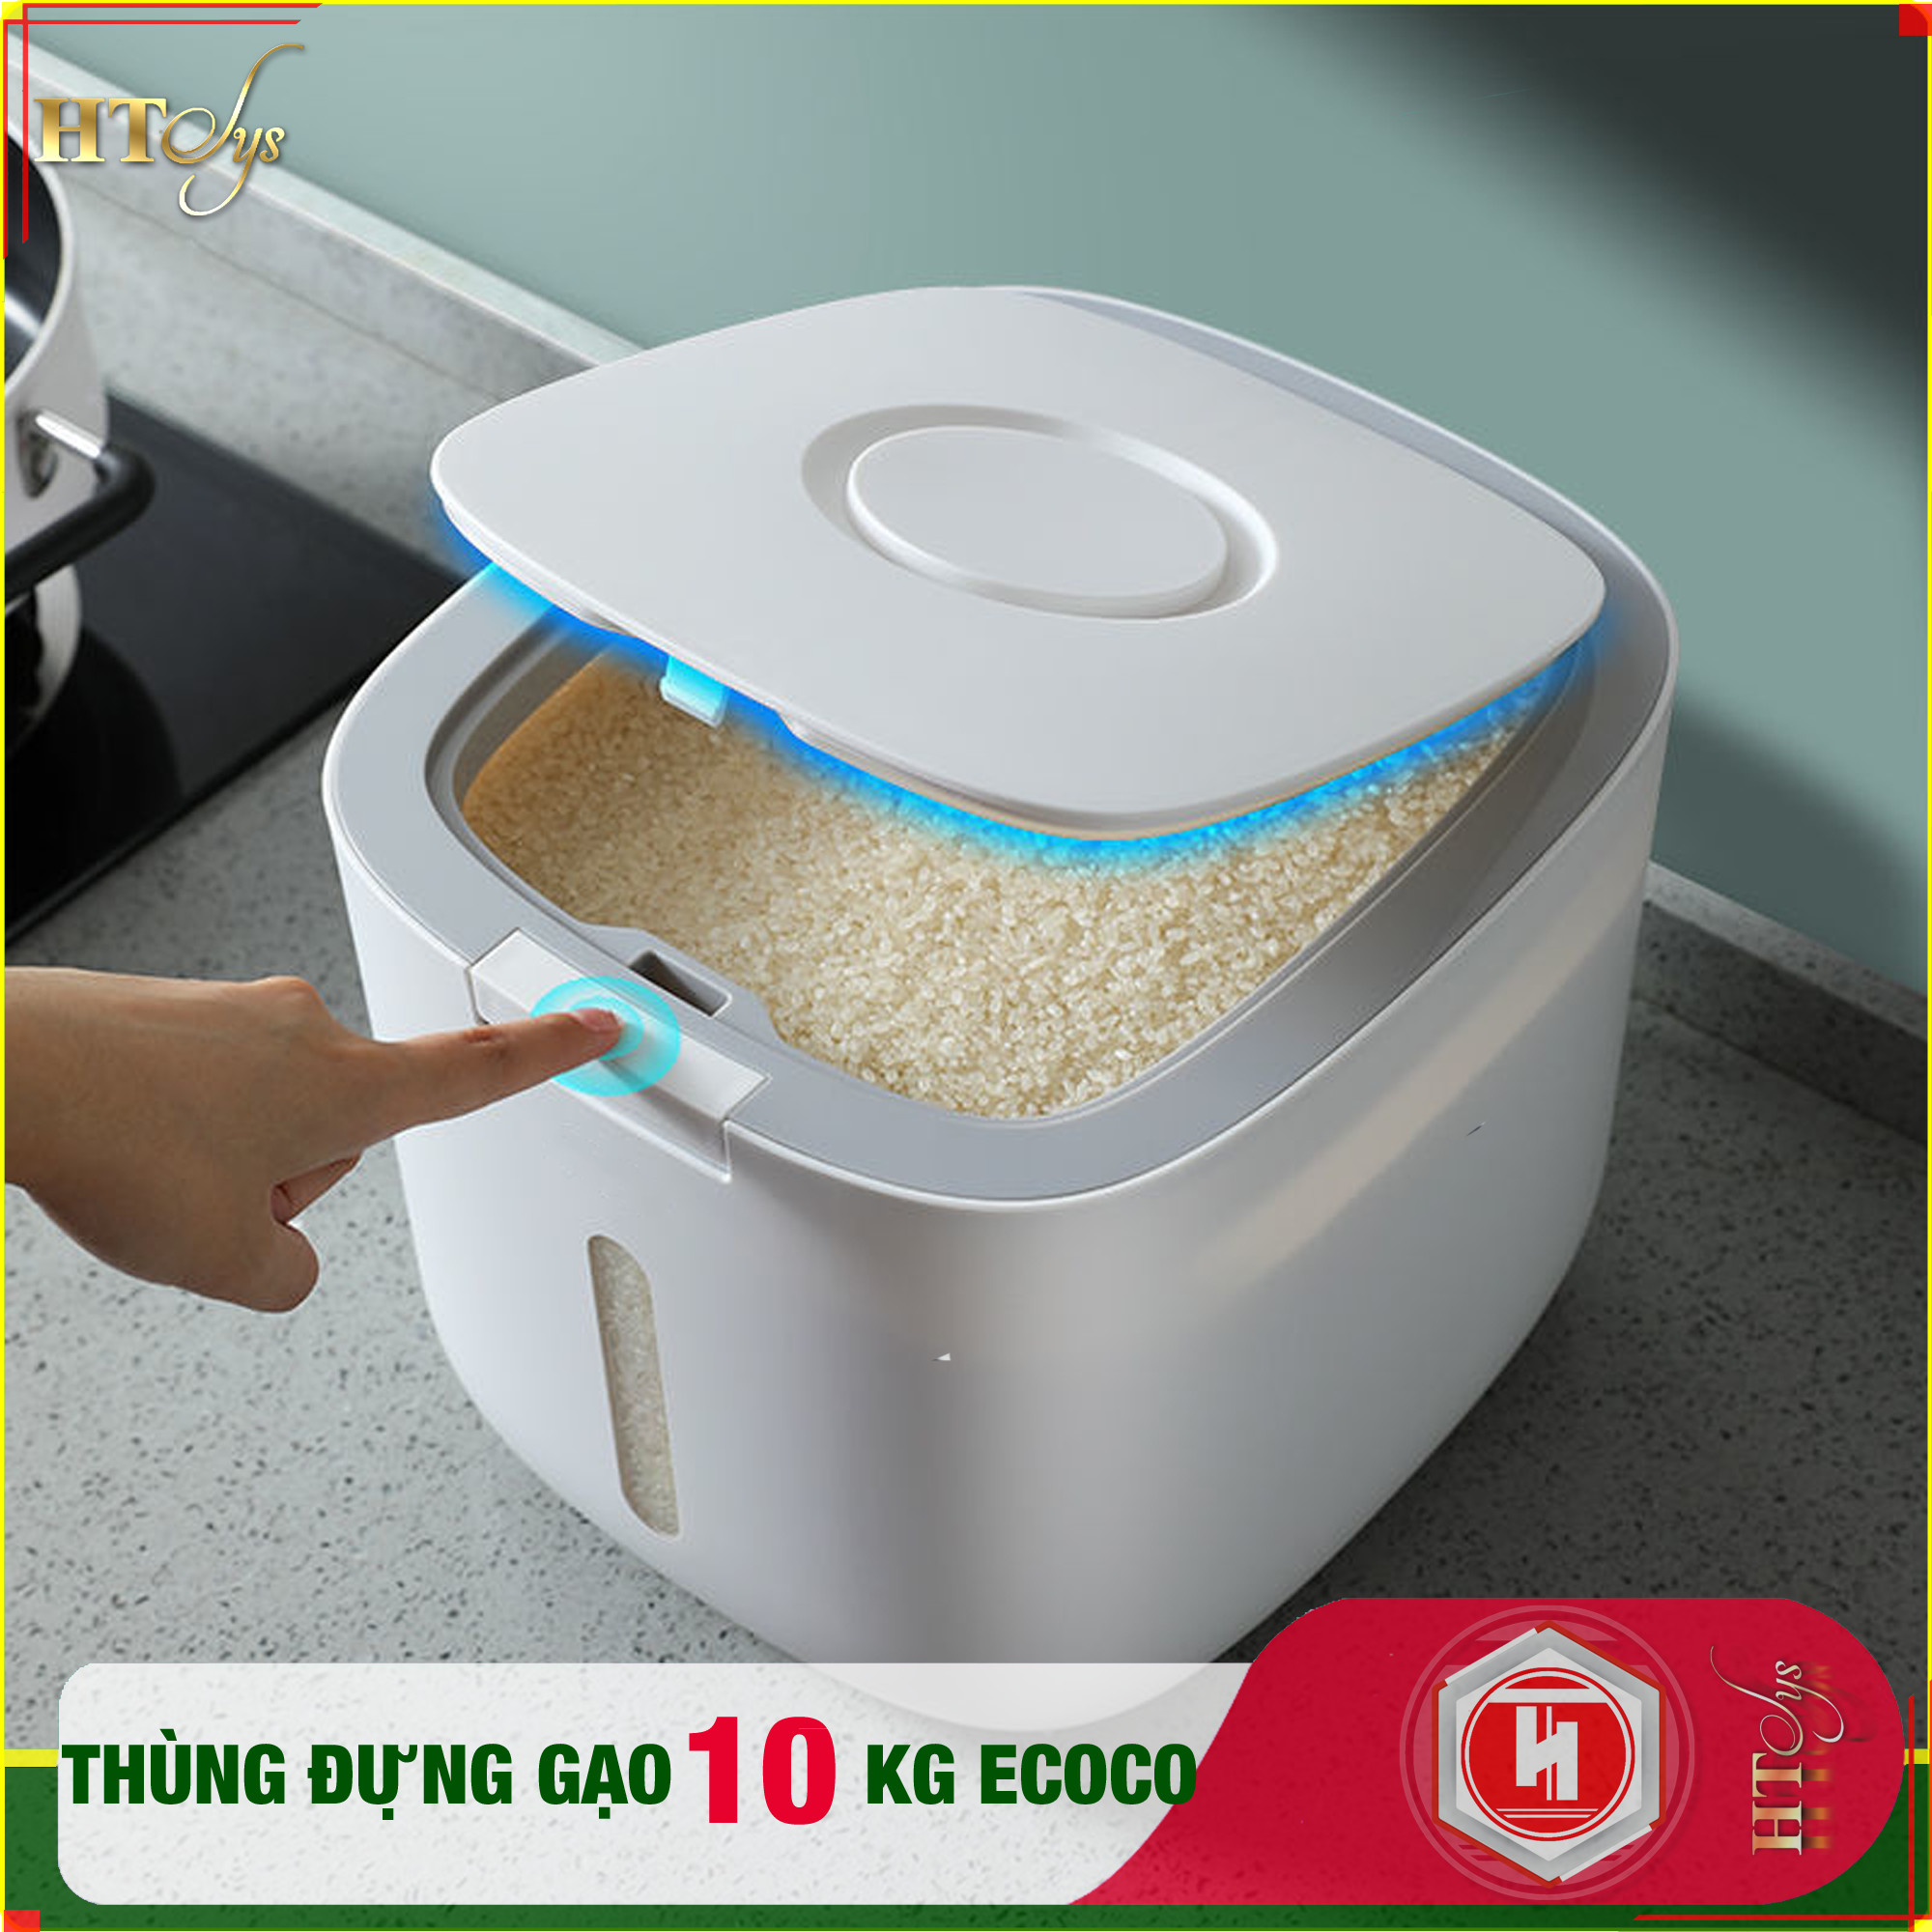 Thùng đựng gạo thông minh ECOCO - E2005 - Thiết kế dạng nhấn nút - Chống kiến - Chống ẩm - Chống mọt - Chất liệu ABS cao cấp+ 01 Vỉ móc Vàng Tài Lộc + 04 Khăn lau siêu thấm